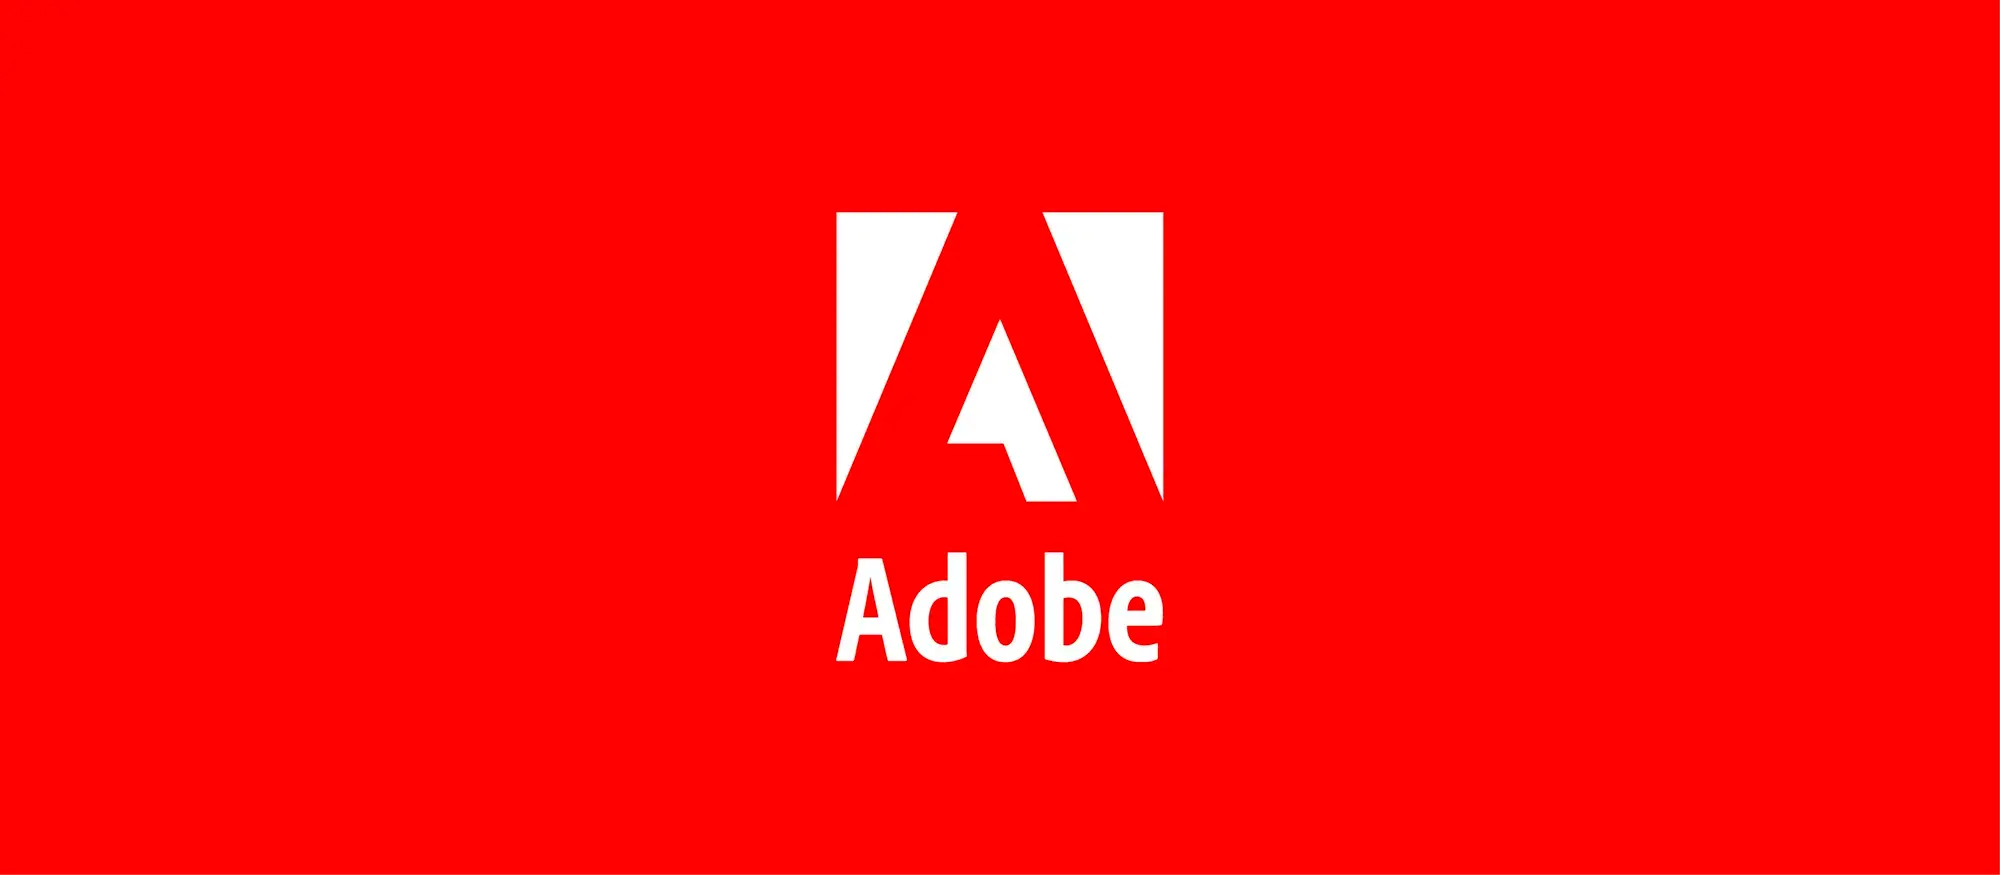 Adobe använder artificiell intelligens för att separera ljudspår